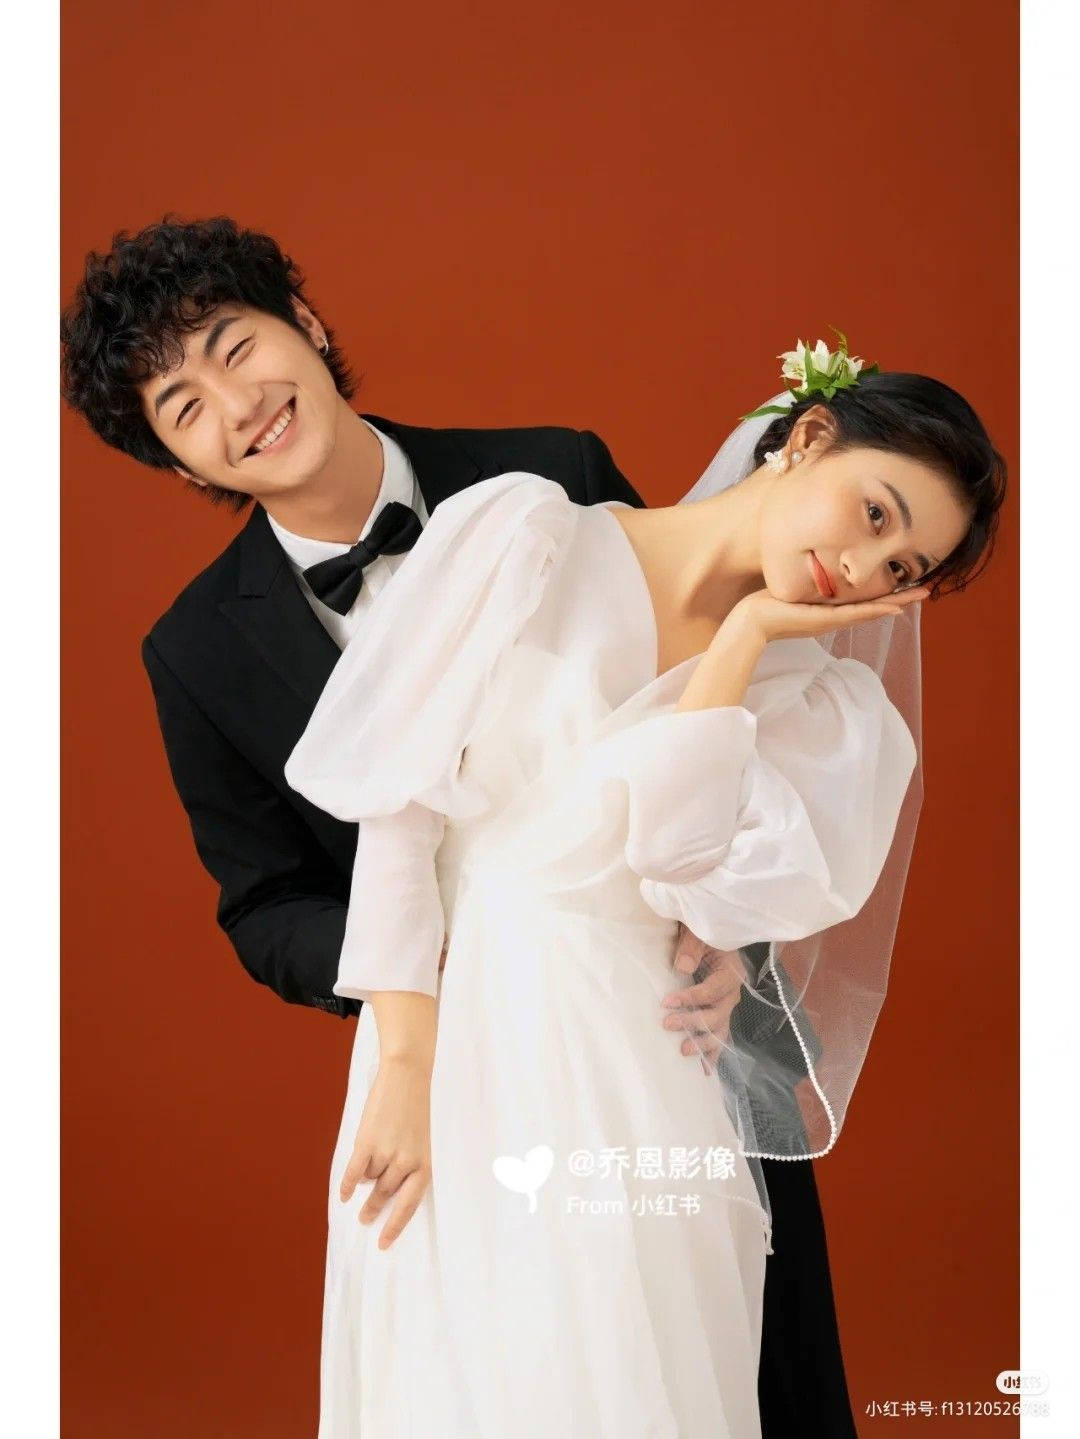 Korean Couple Nuptial Photograph Wallpaper